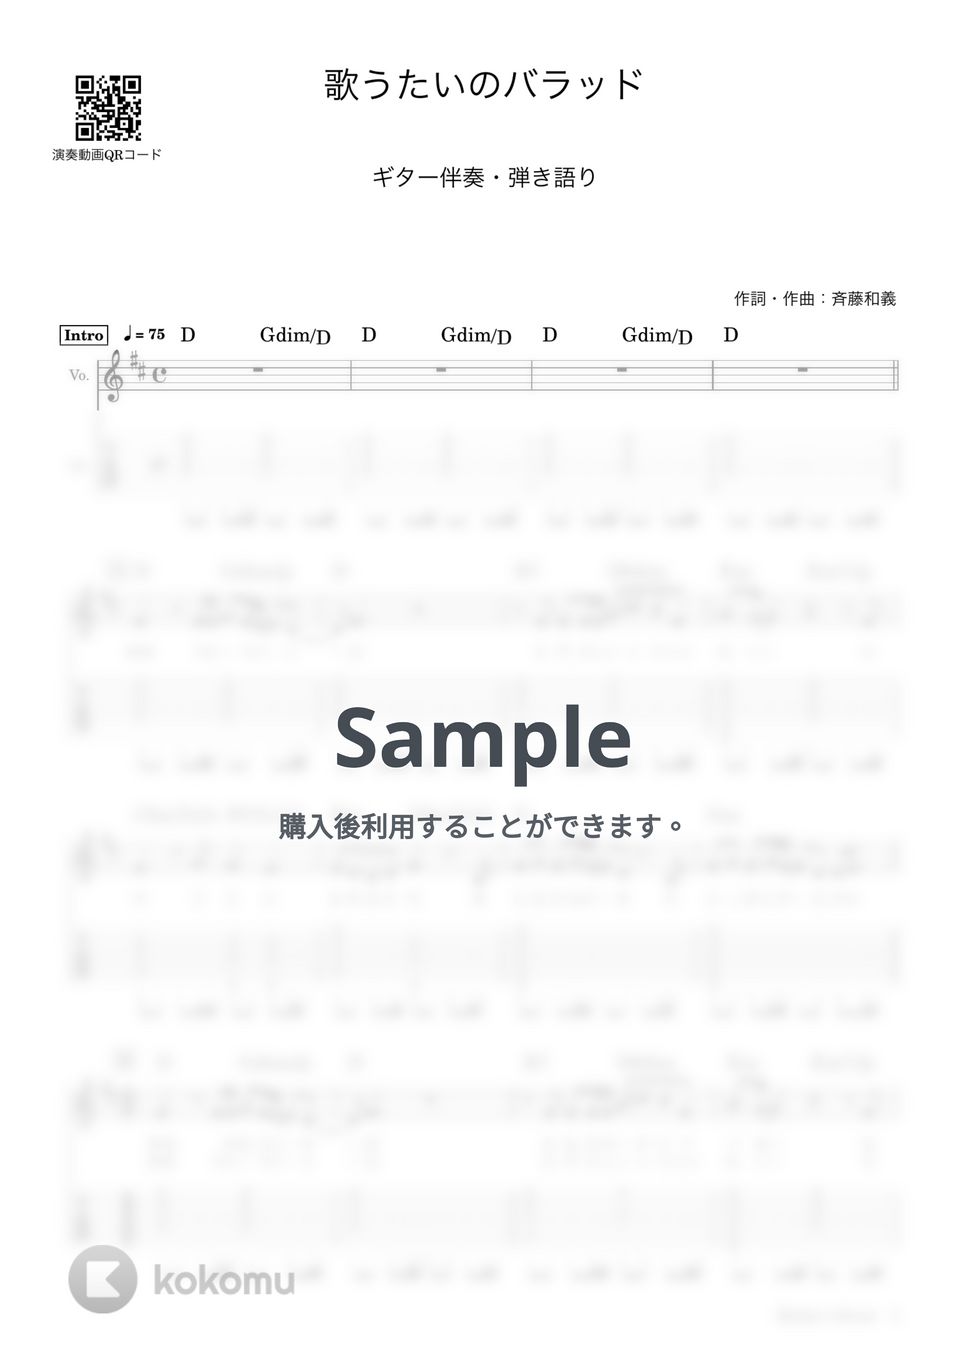 斉藤和義 - 歌うたいのバラッド (ギター伴奏・弾き語り) by Sinho